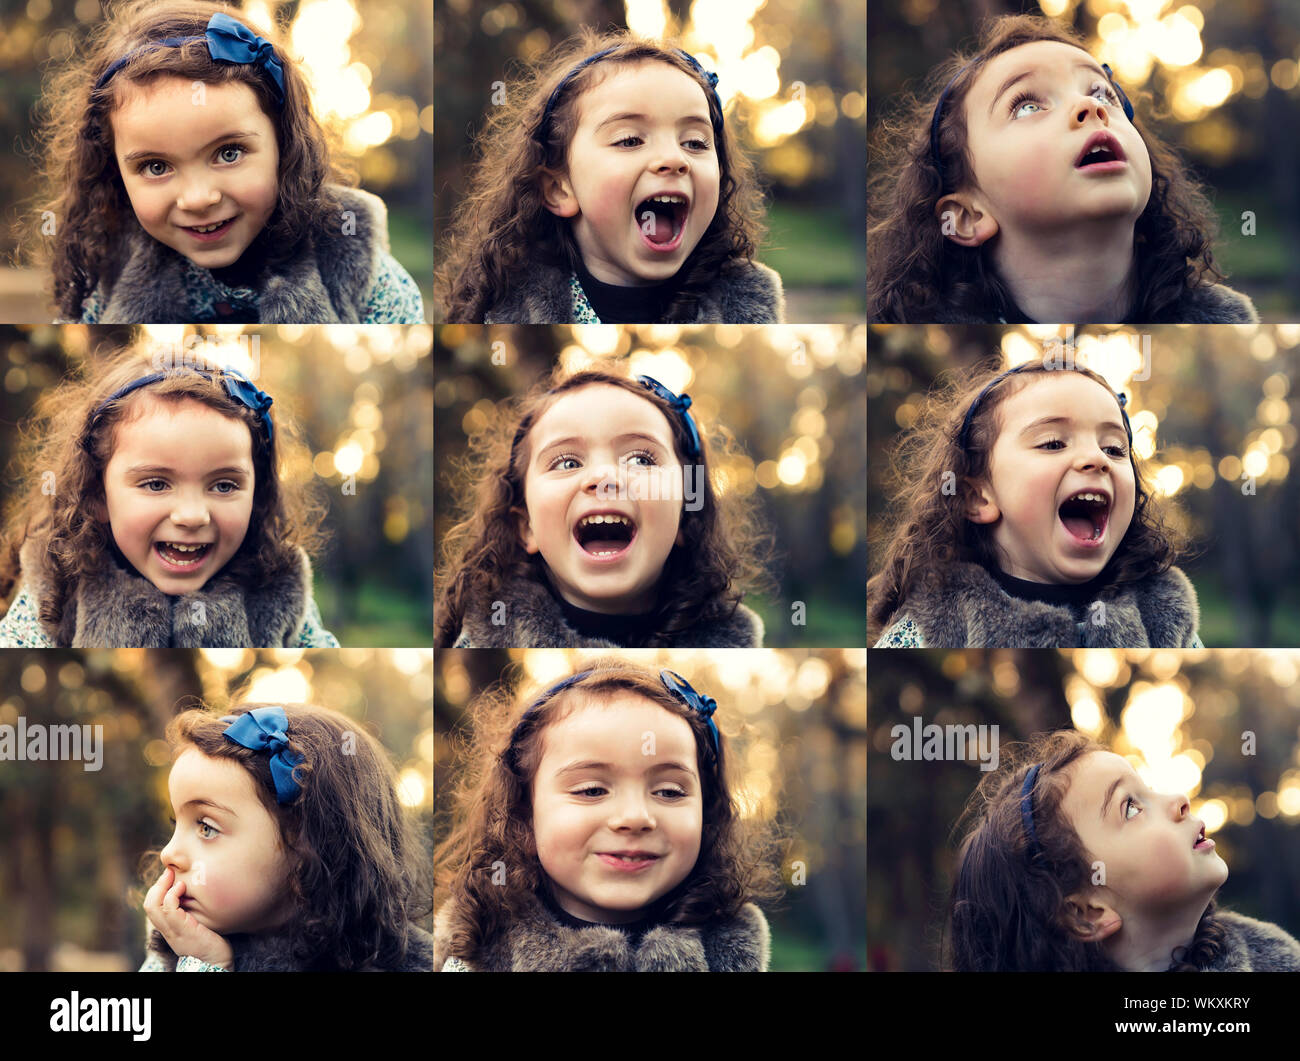 Mehrere Collage mit Portraits, die zu ein und demselben Mädchen im Freien  Stockfotografie - Alamy